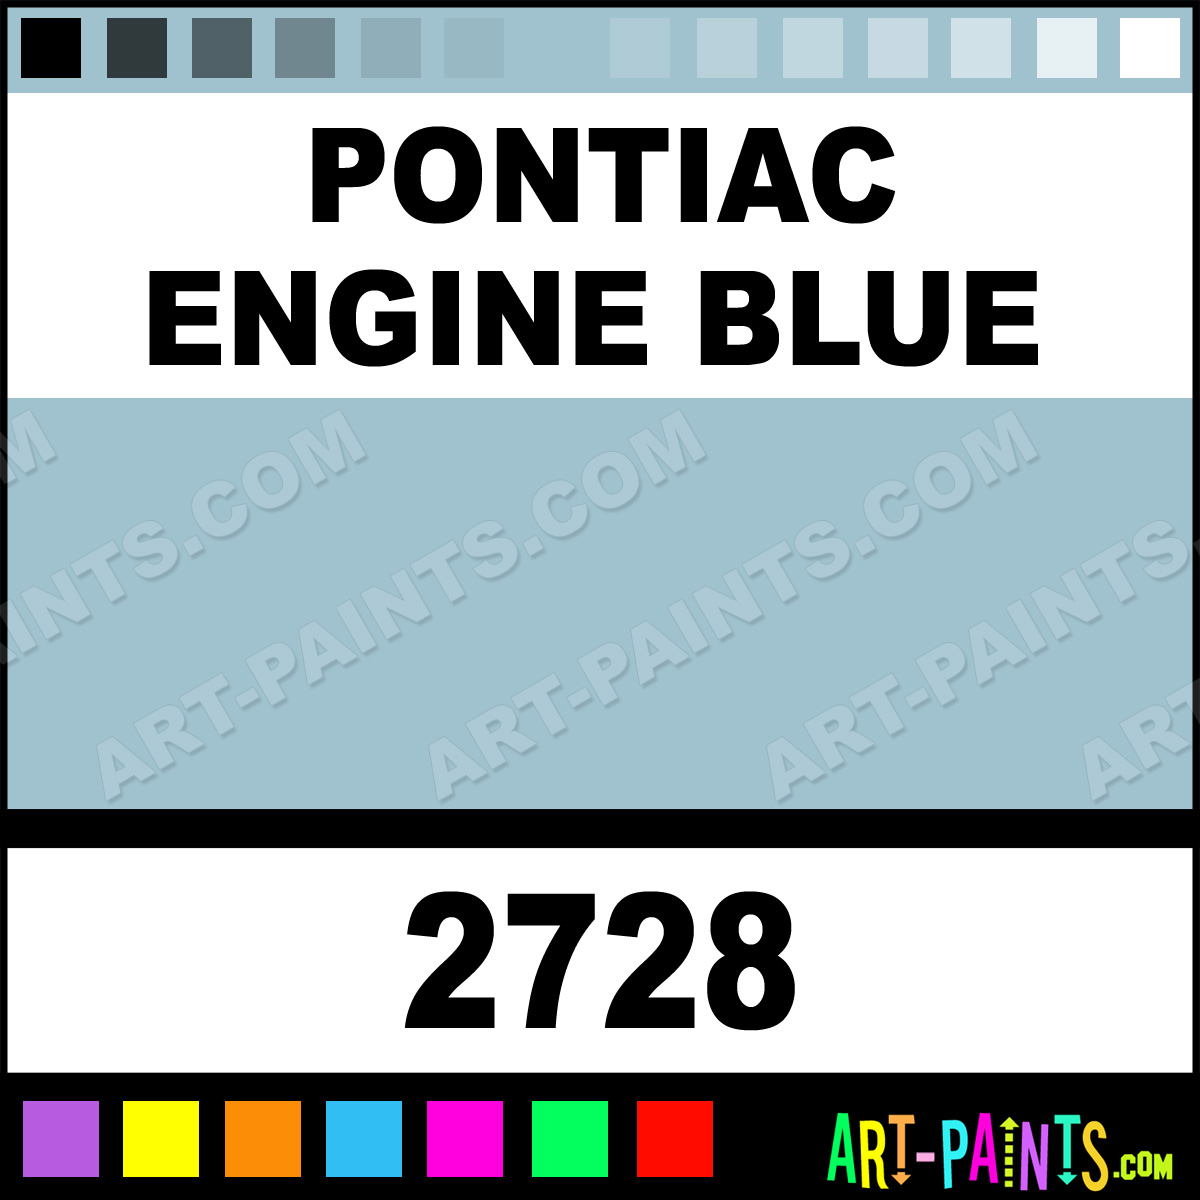 Pontiac-Engine-Blue-lg.jpg